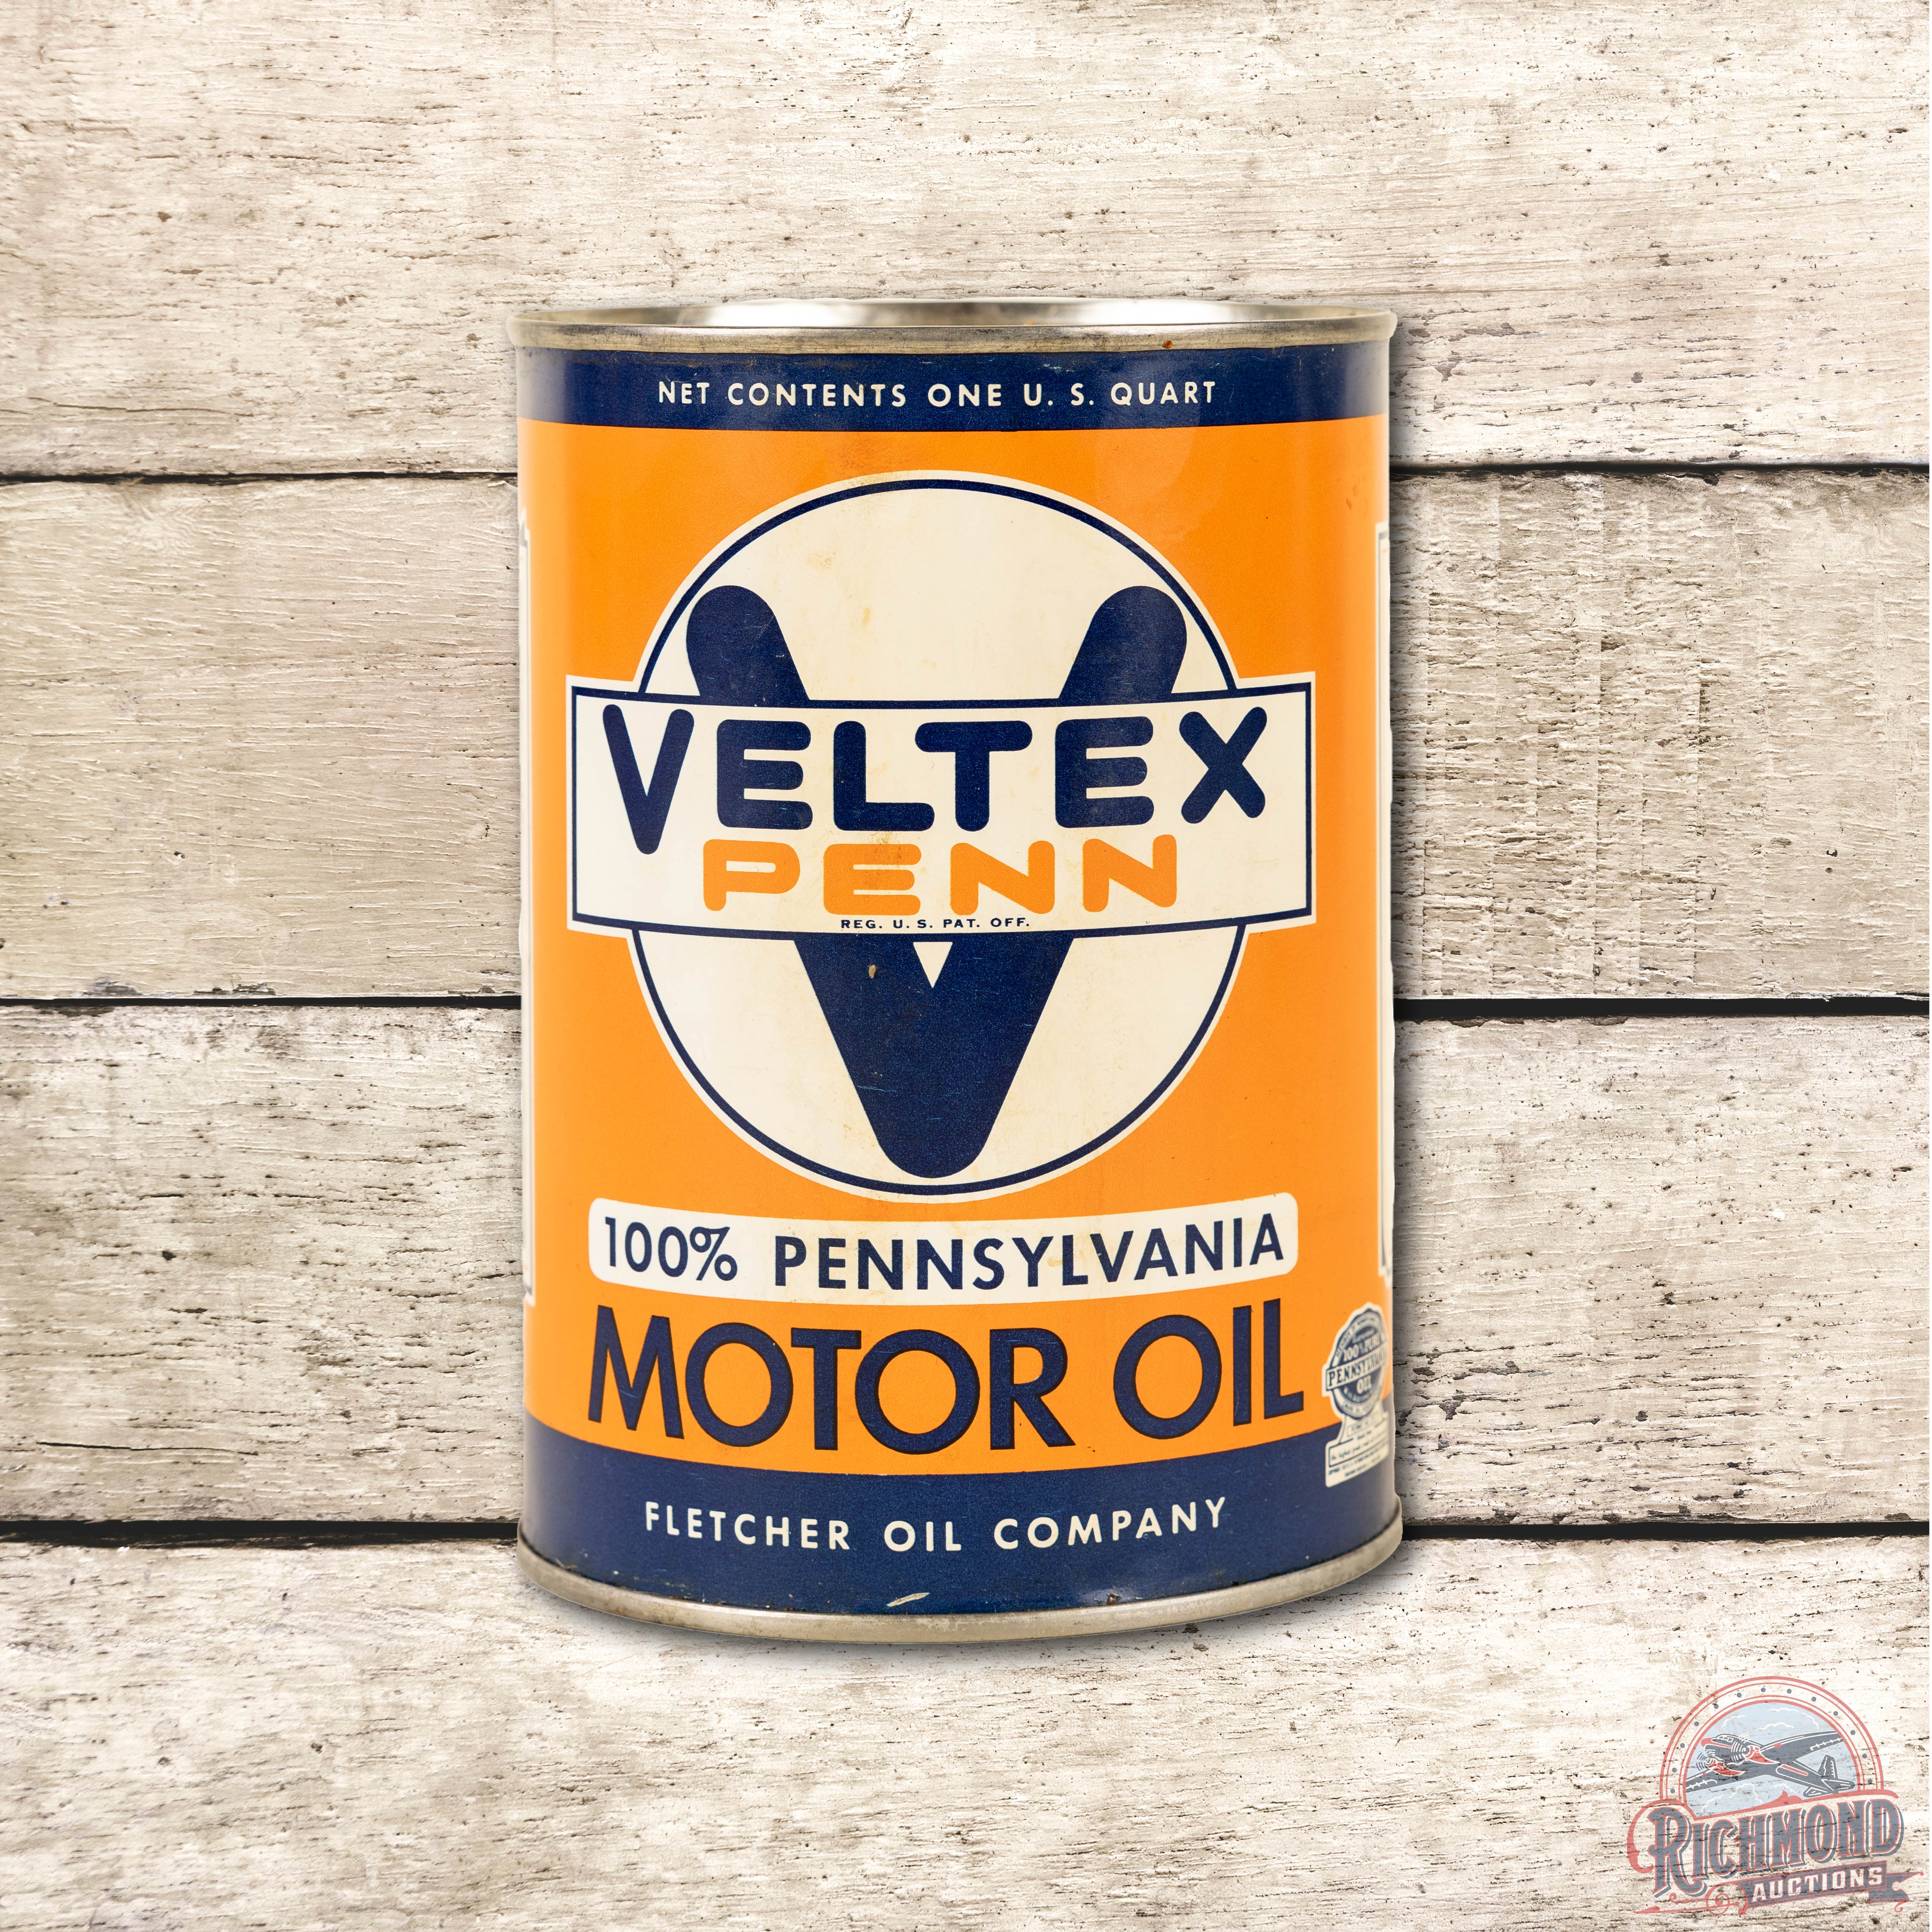 Veltex Penn 100% Pure Pennsylvania Motor Oil Full One Quart Can